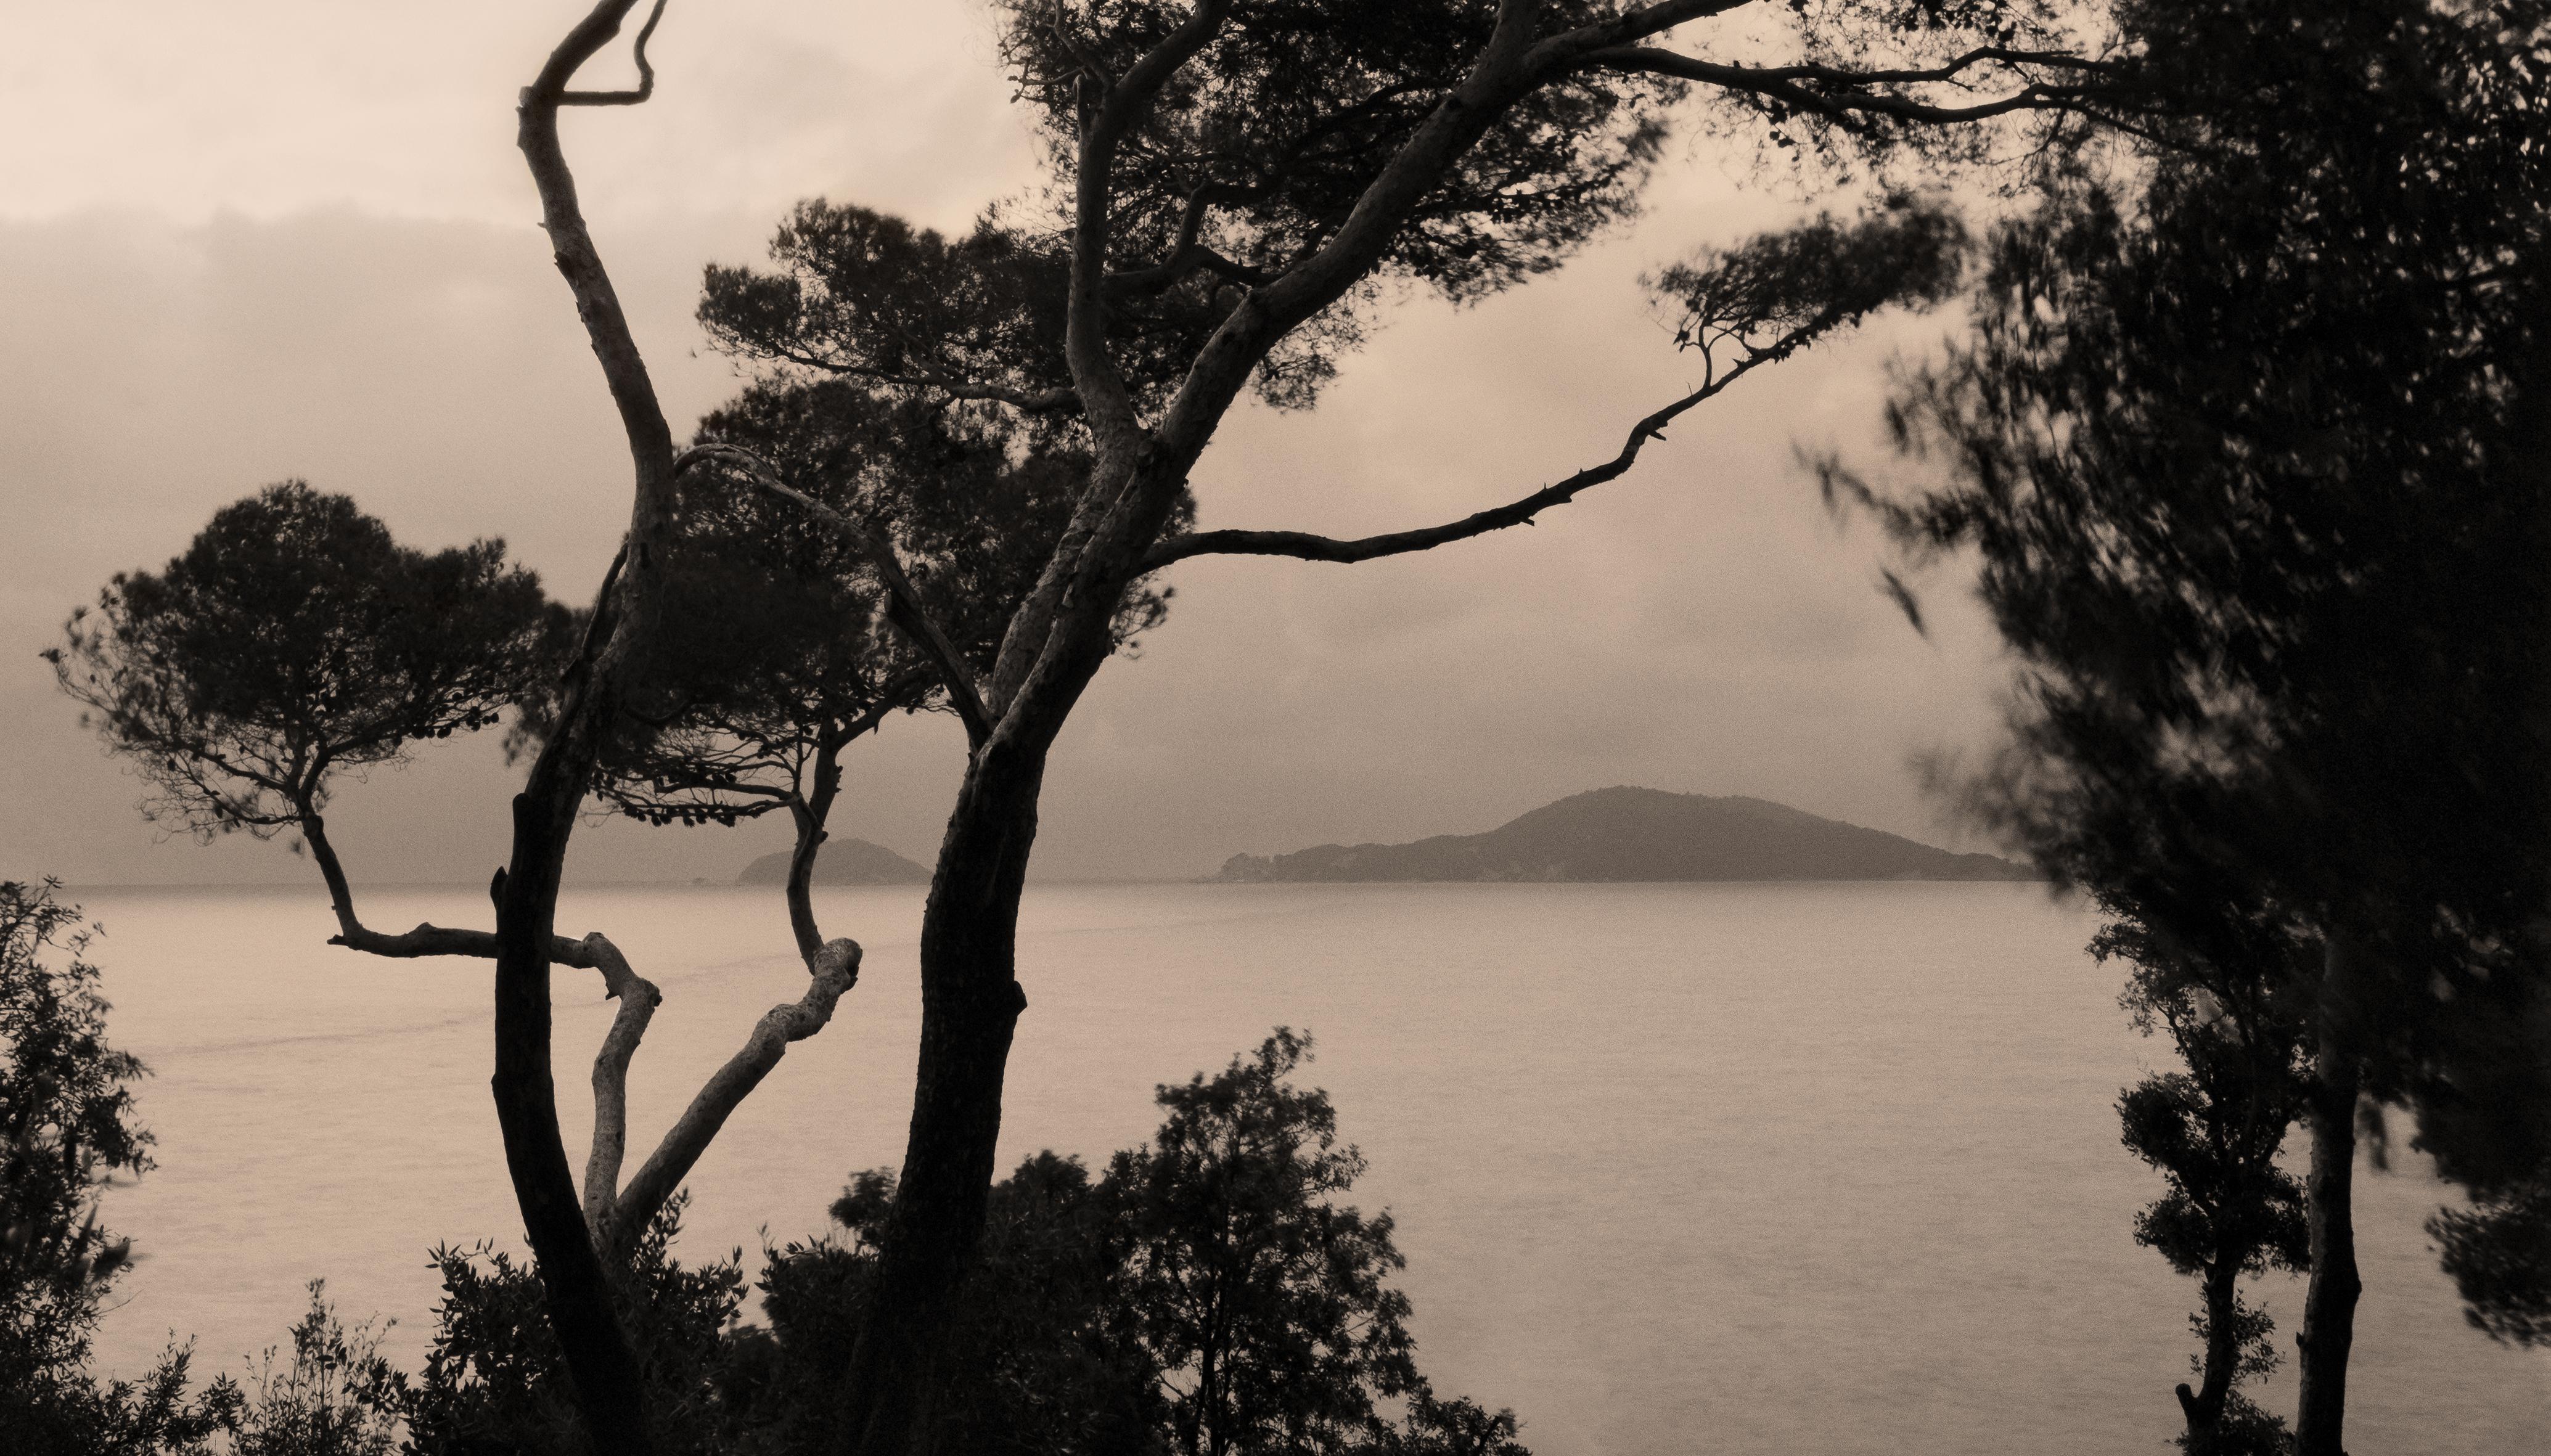 Ugne Pouwell Landscape Photograph – Currents - Italienische Riviera-Landschaftsfotografie 175 x 100cm, limitierte Auflage 5